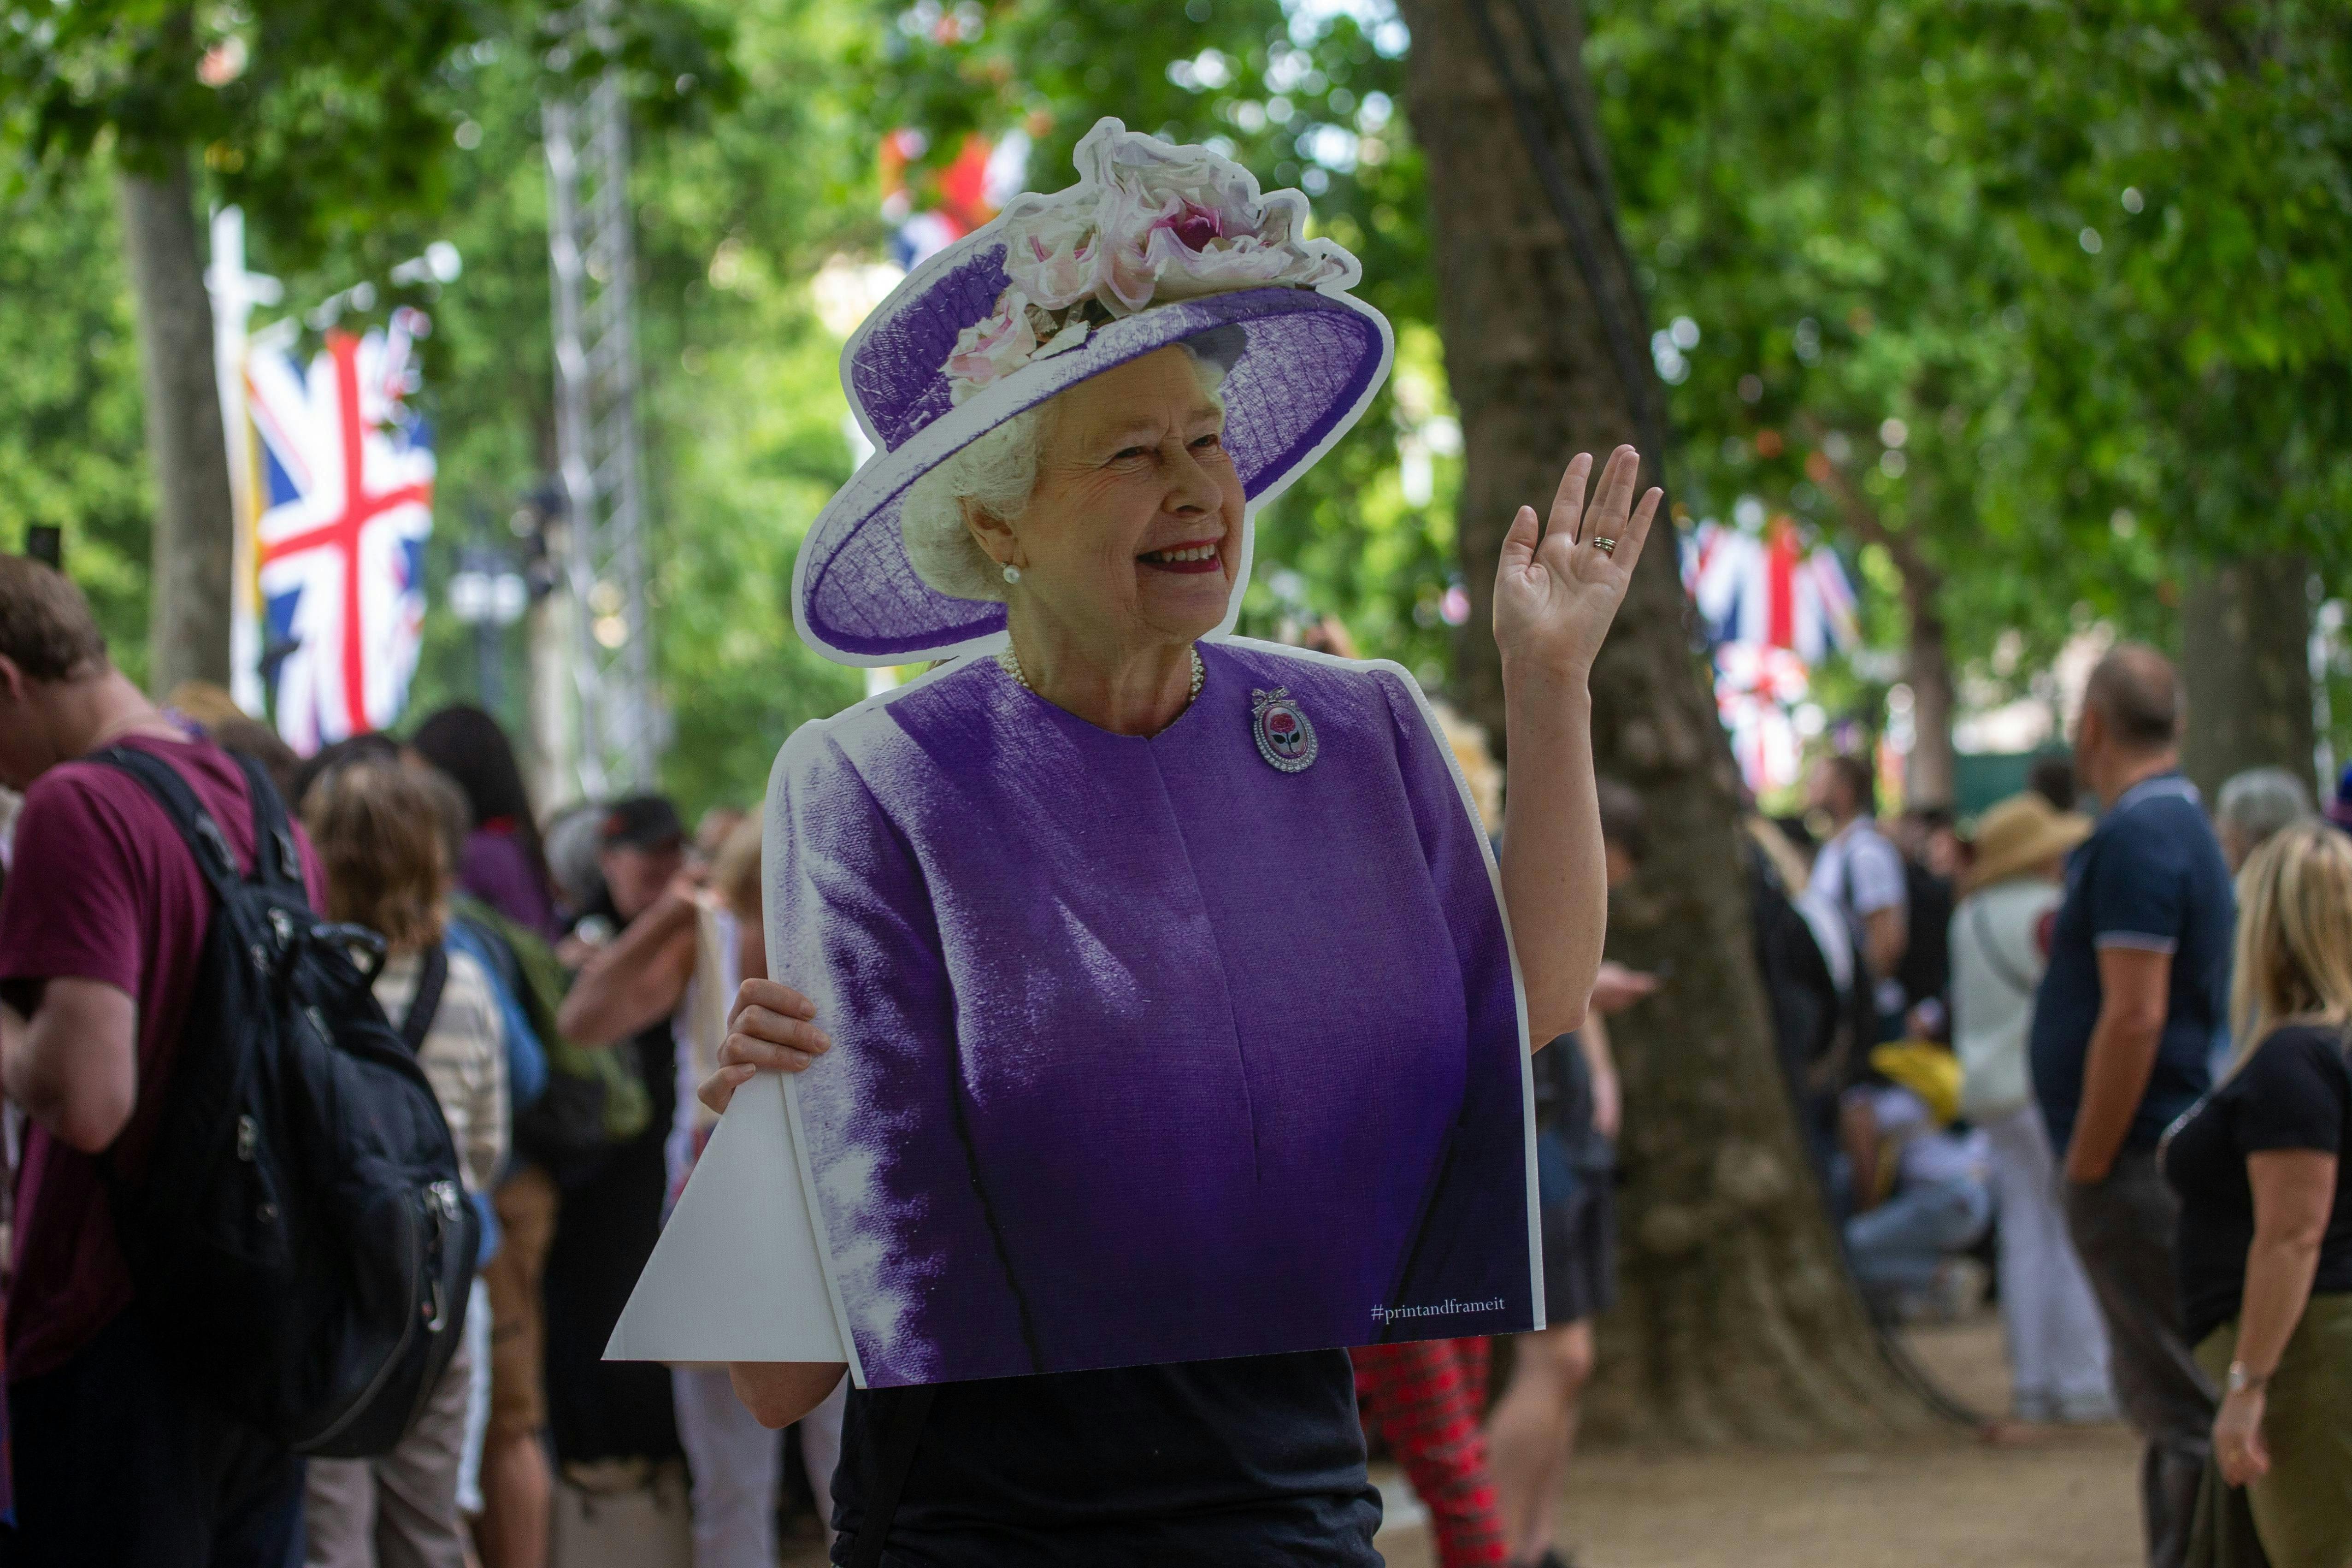 Dronning Elizabeth er torsdag blevet fejret for sine imponerende 70 år som regent, men fredag bliver hun væk fra festen